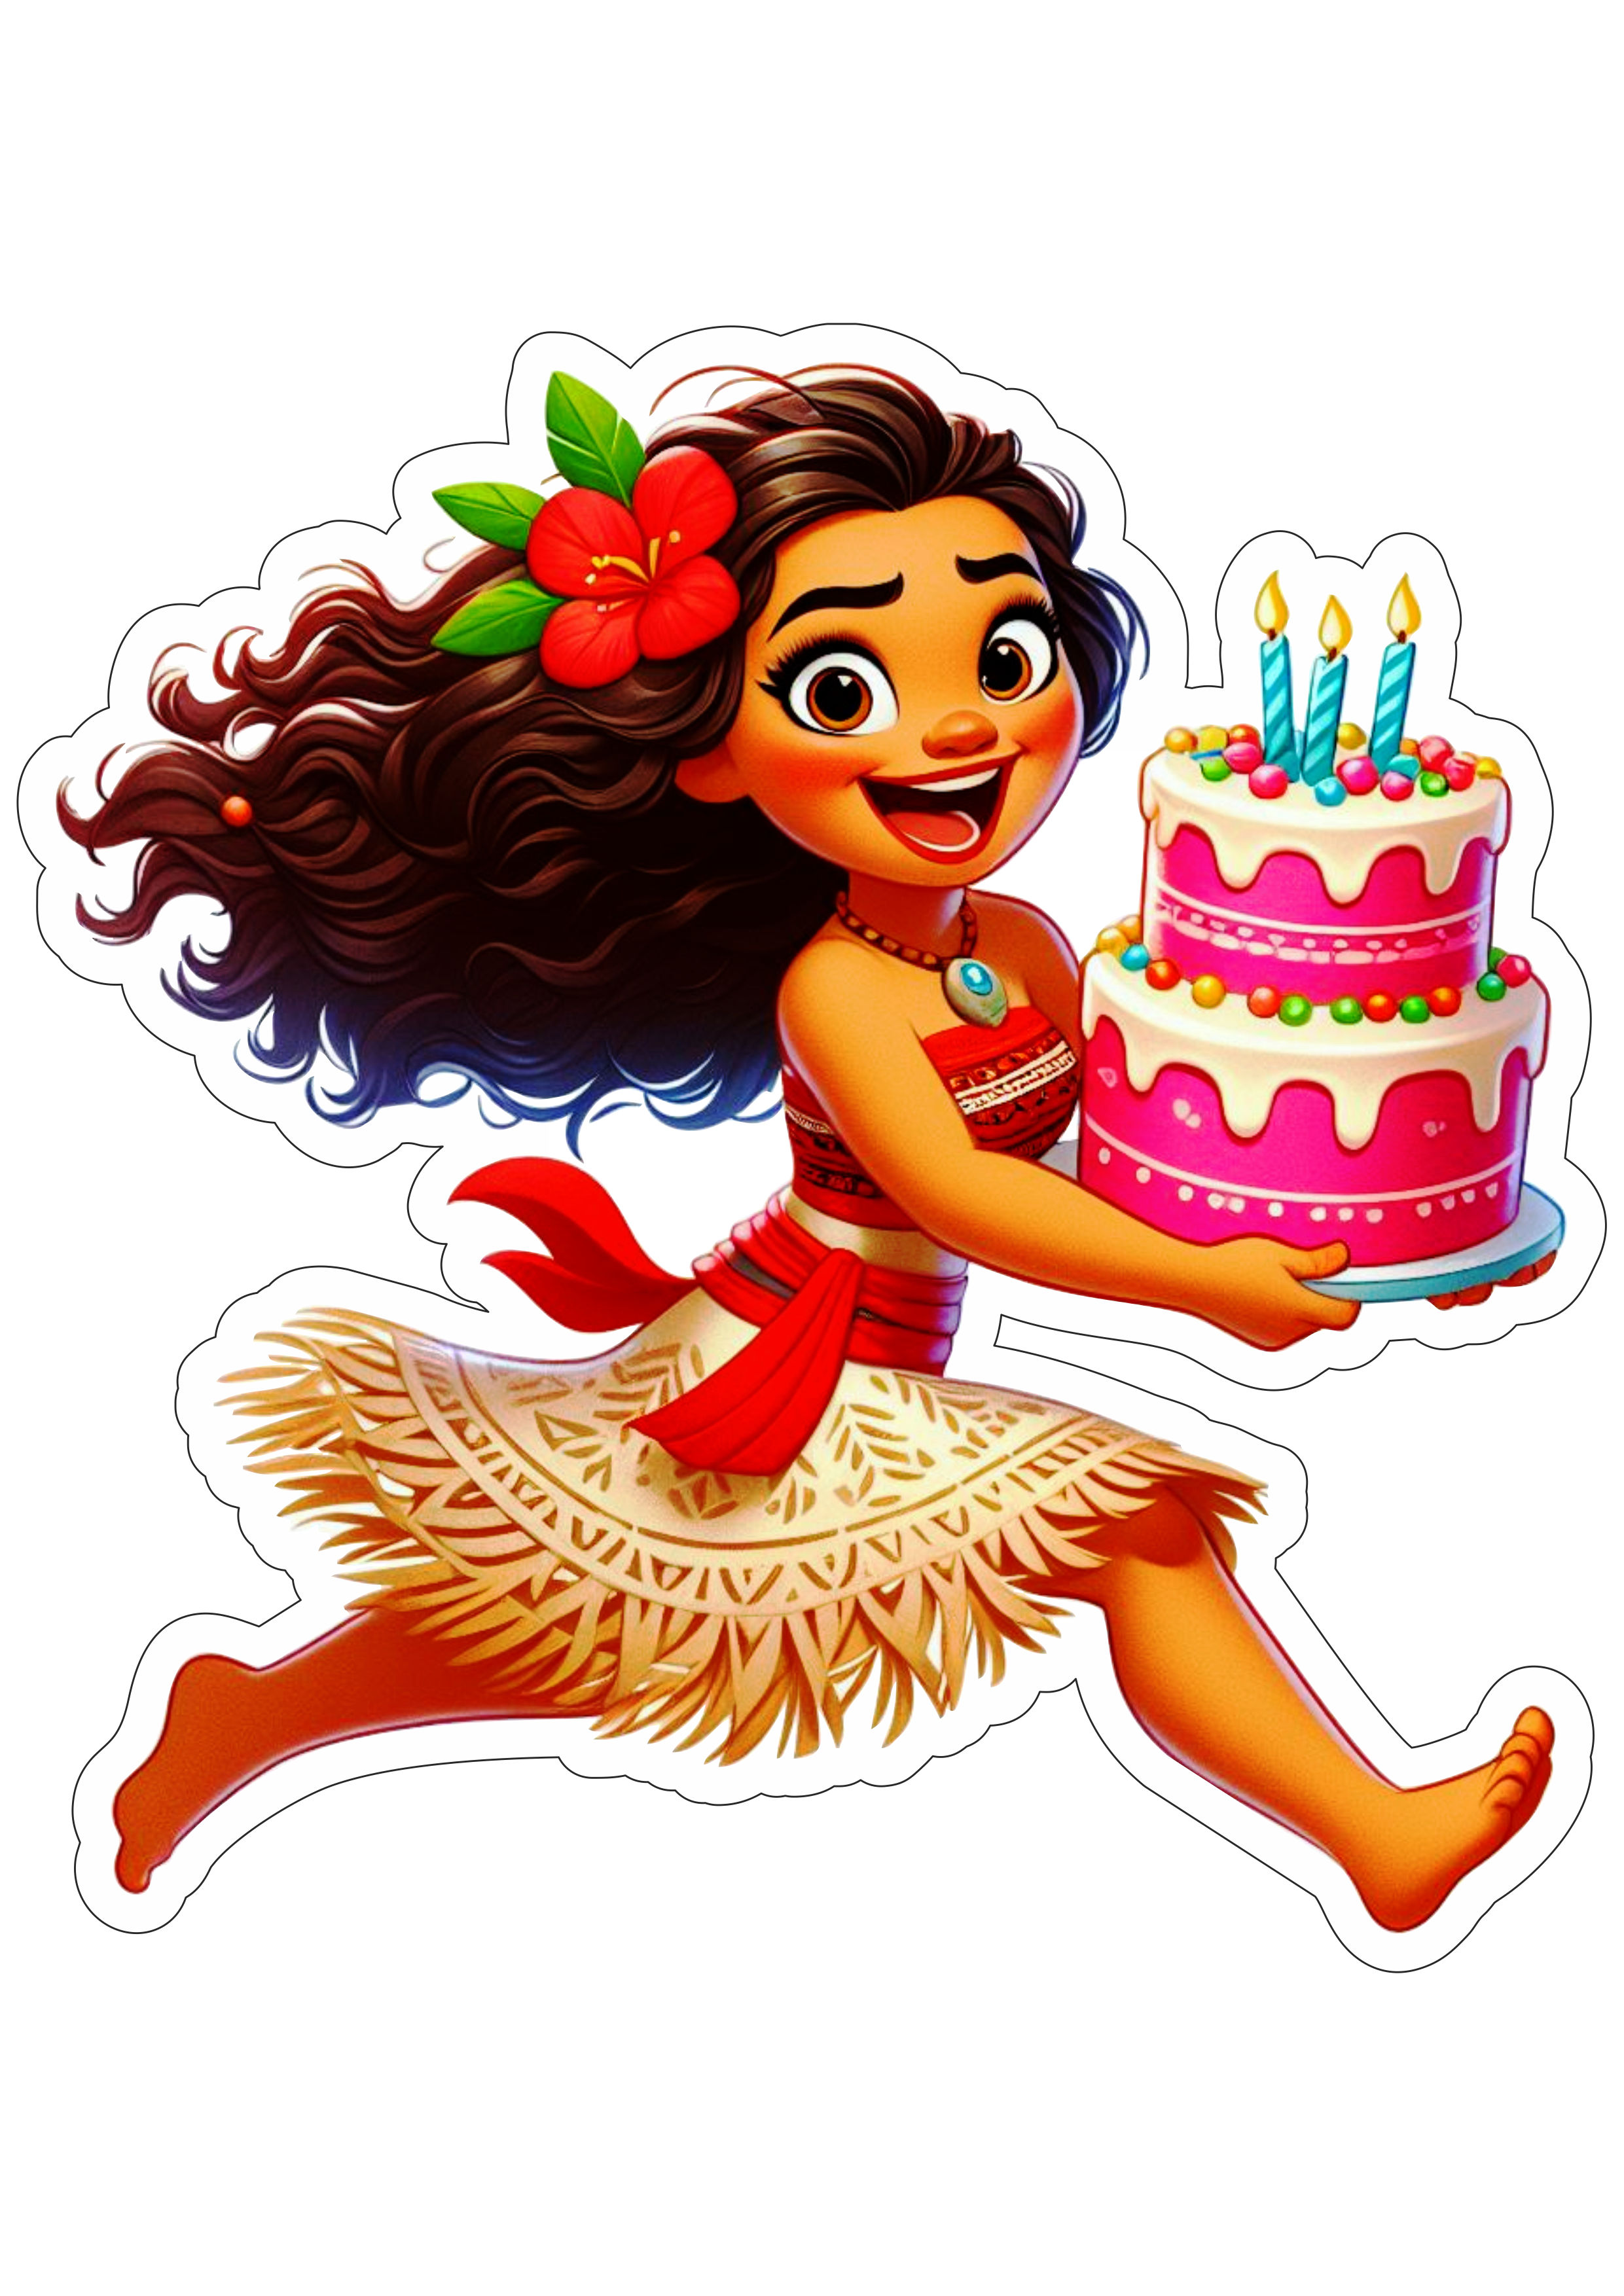 Moana correndo com bolo de aniversário animação Disney desenho fundo transparente ilustração png